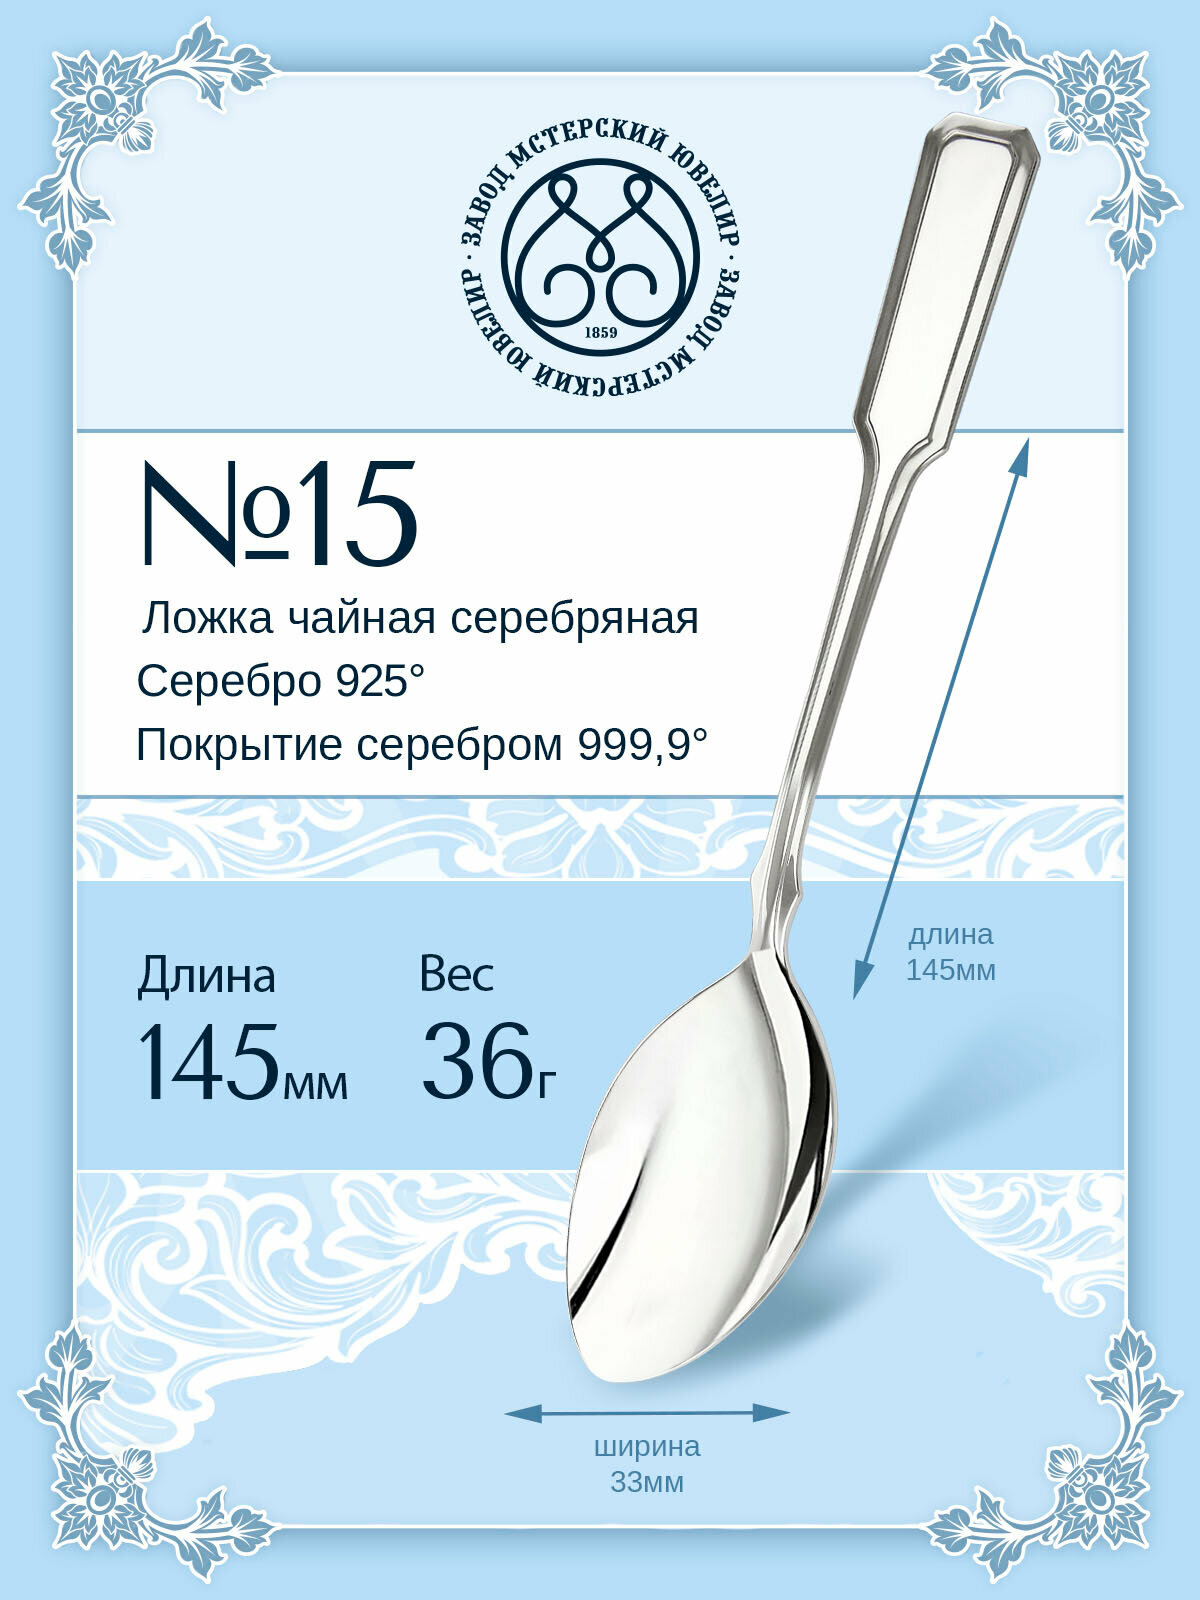 Ложка серебряная Мстерский ювелир чайная №15